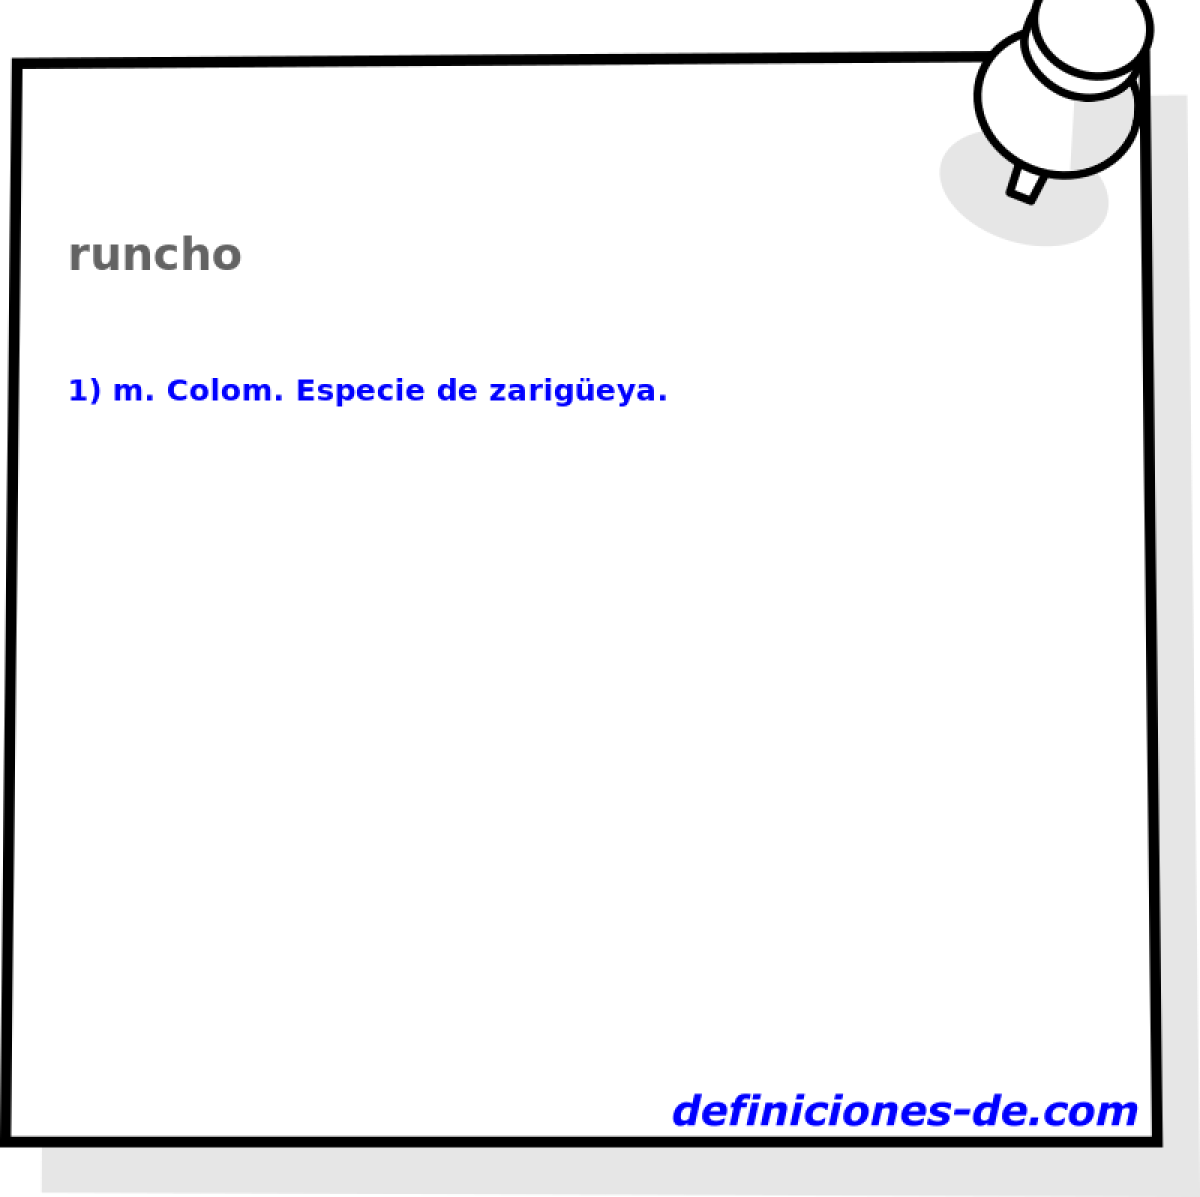 runcho 